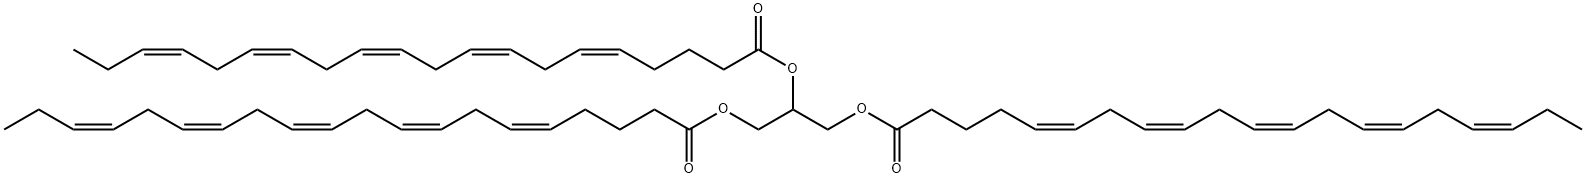 二十碳五烯酸甘油三酯(CIS-5,8,11,14,17) 结构式